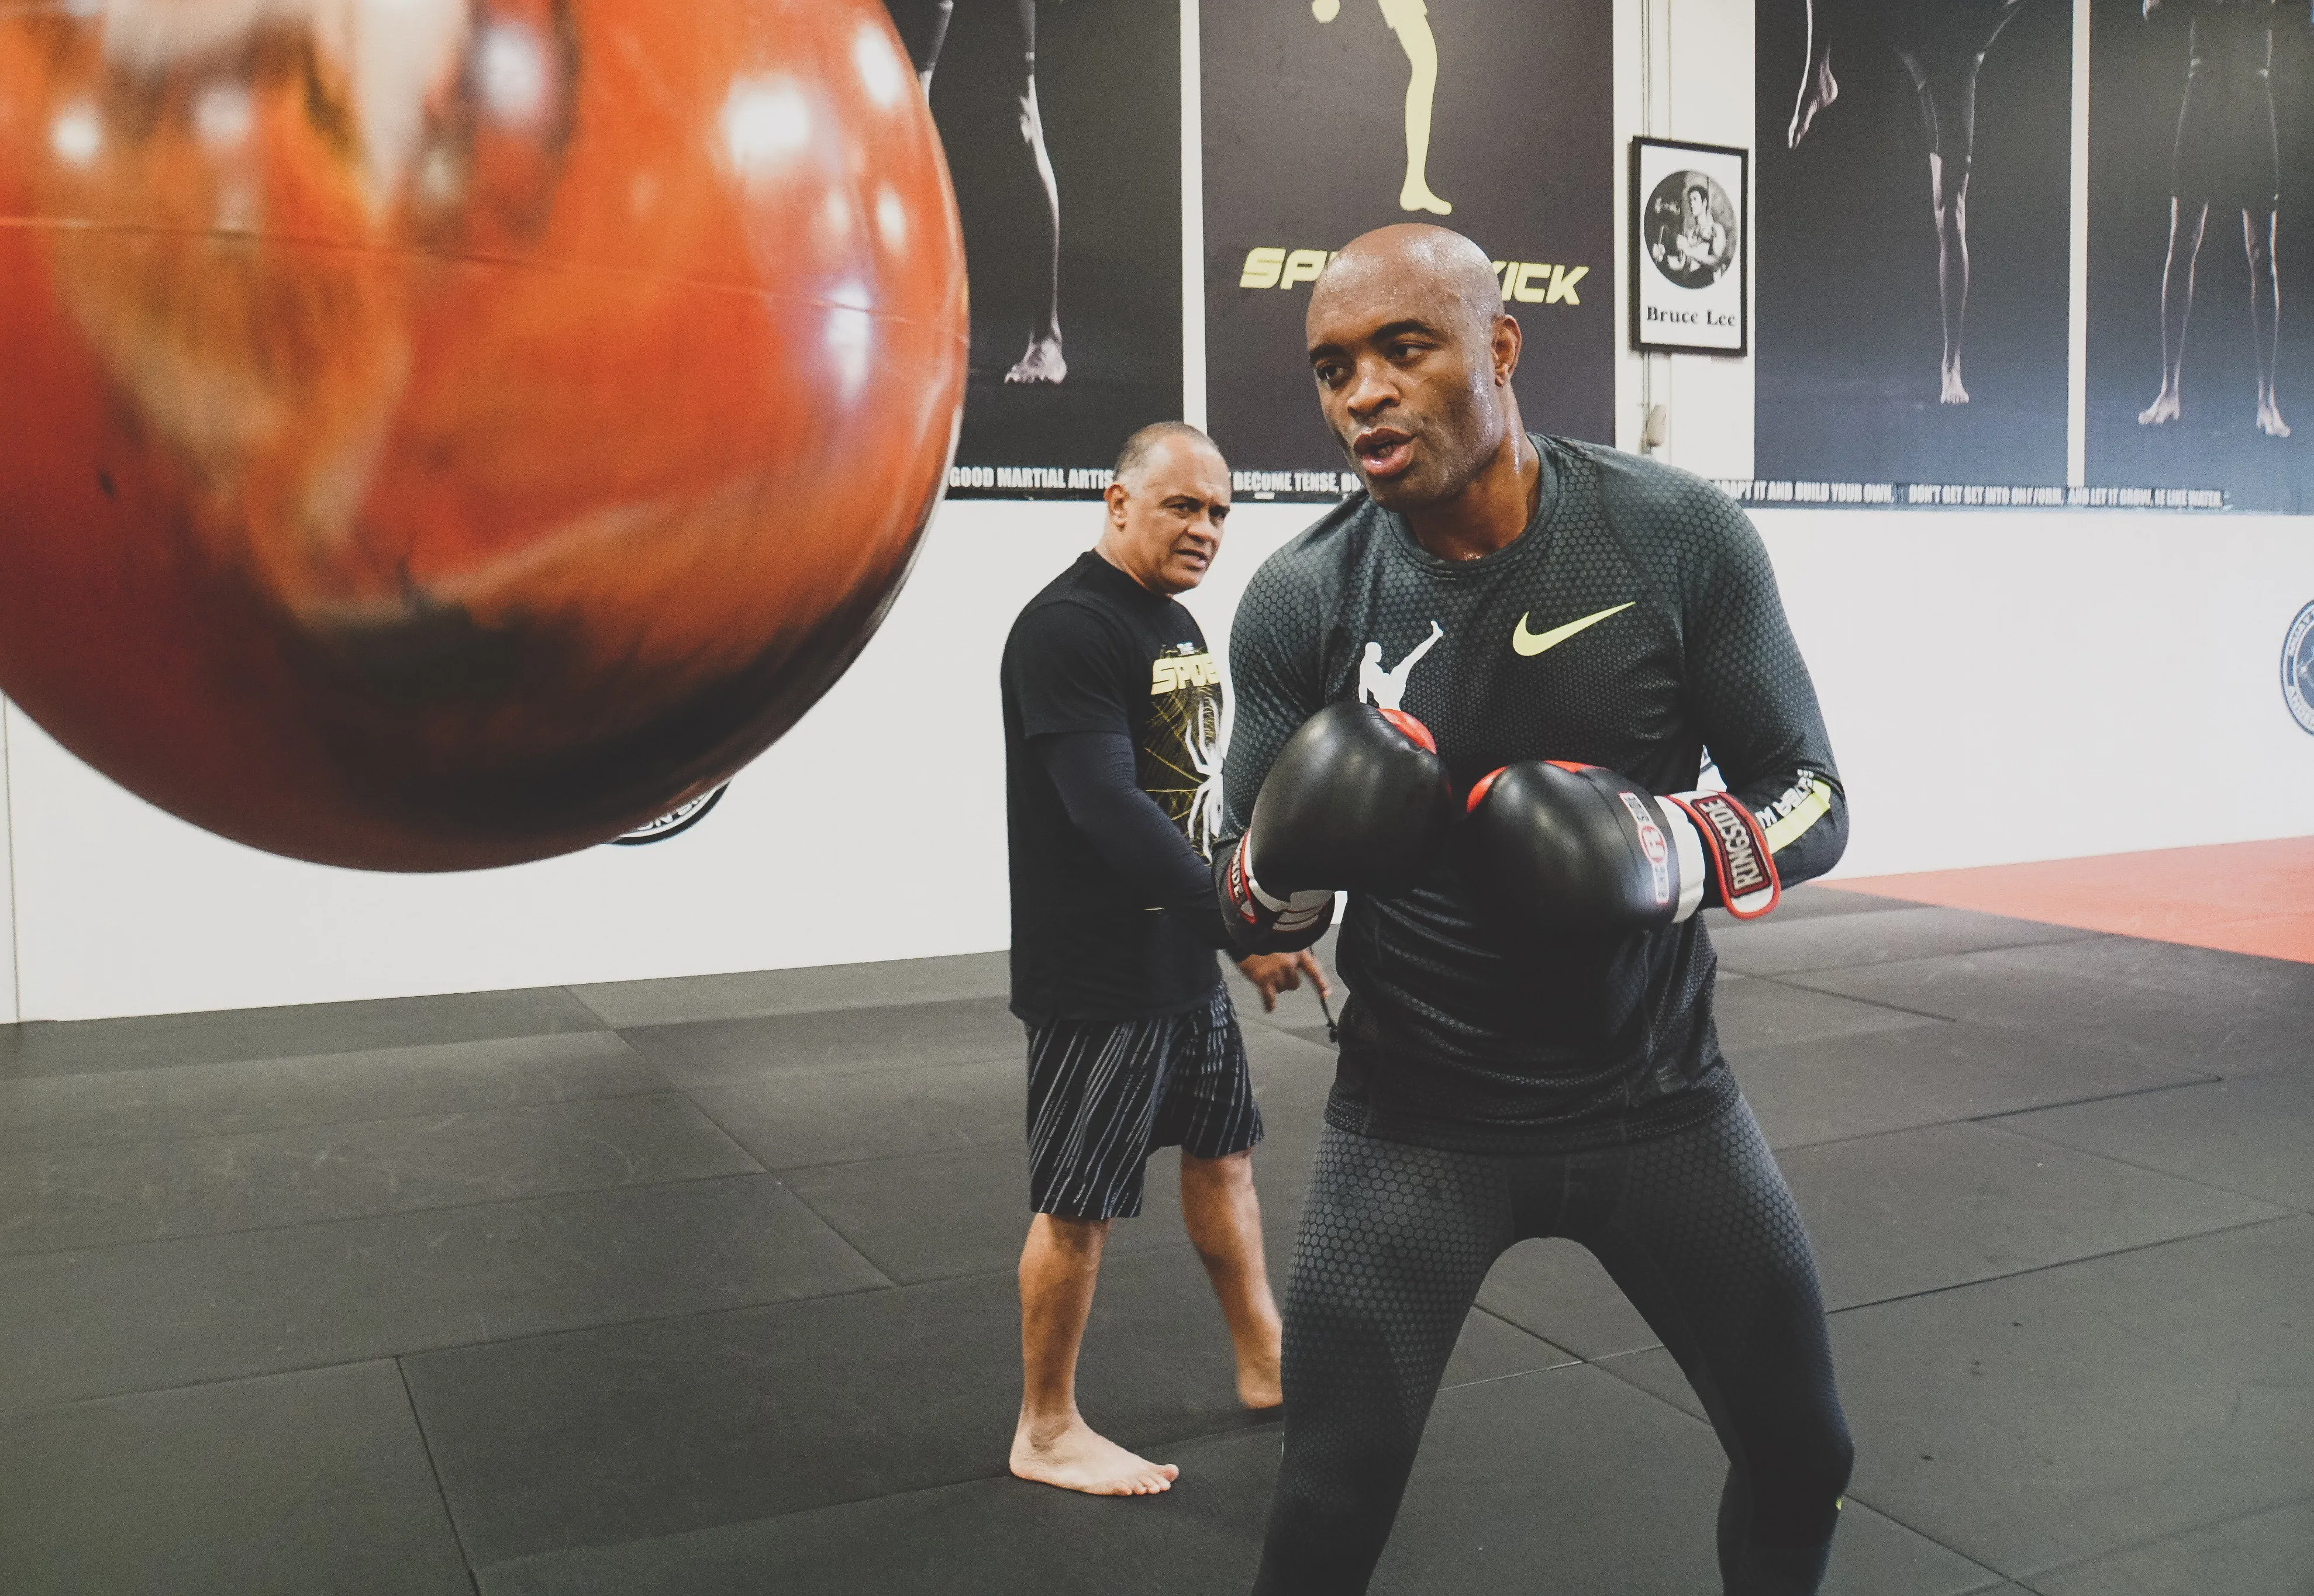 Ator que vive Anderson Silva em série nocauteou lutador no 1º treino de  MMA: 'Desmaiou